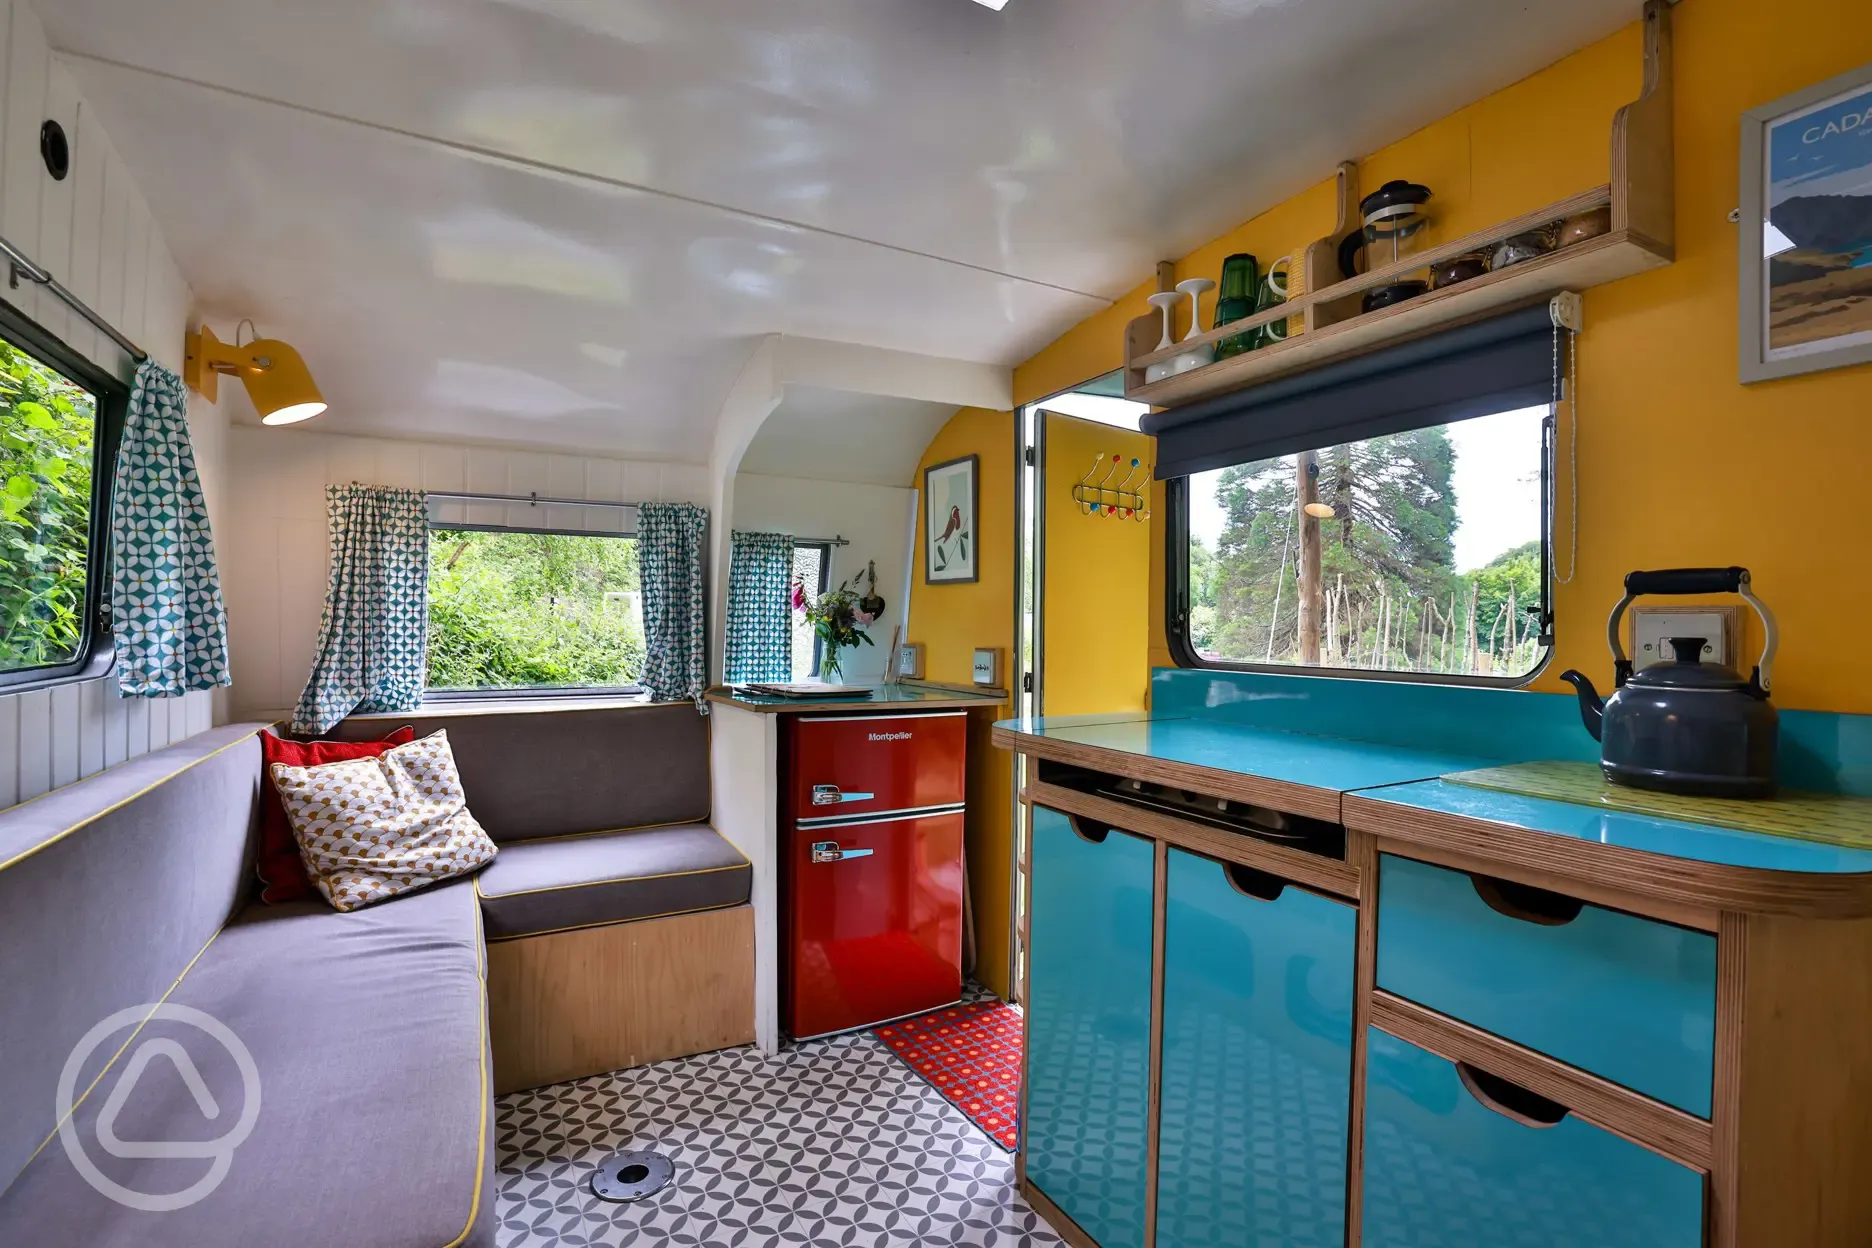 Vintage caravan interior